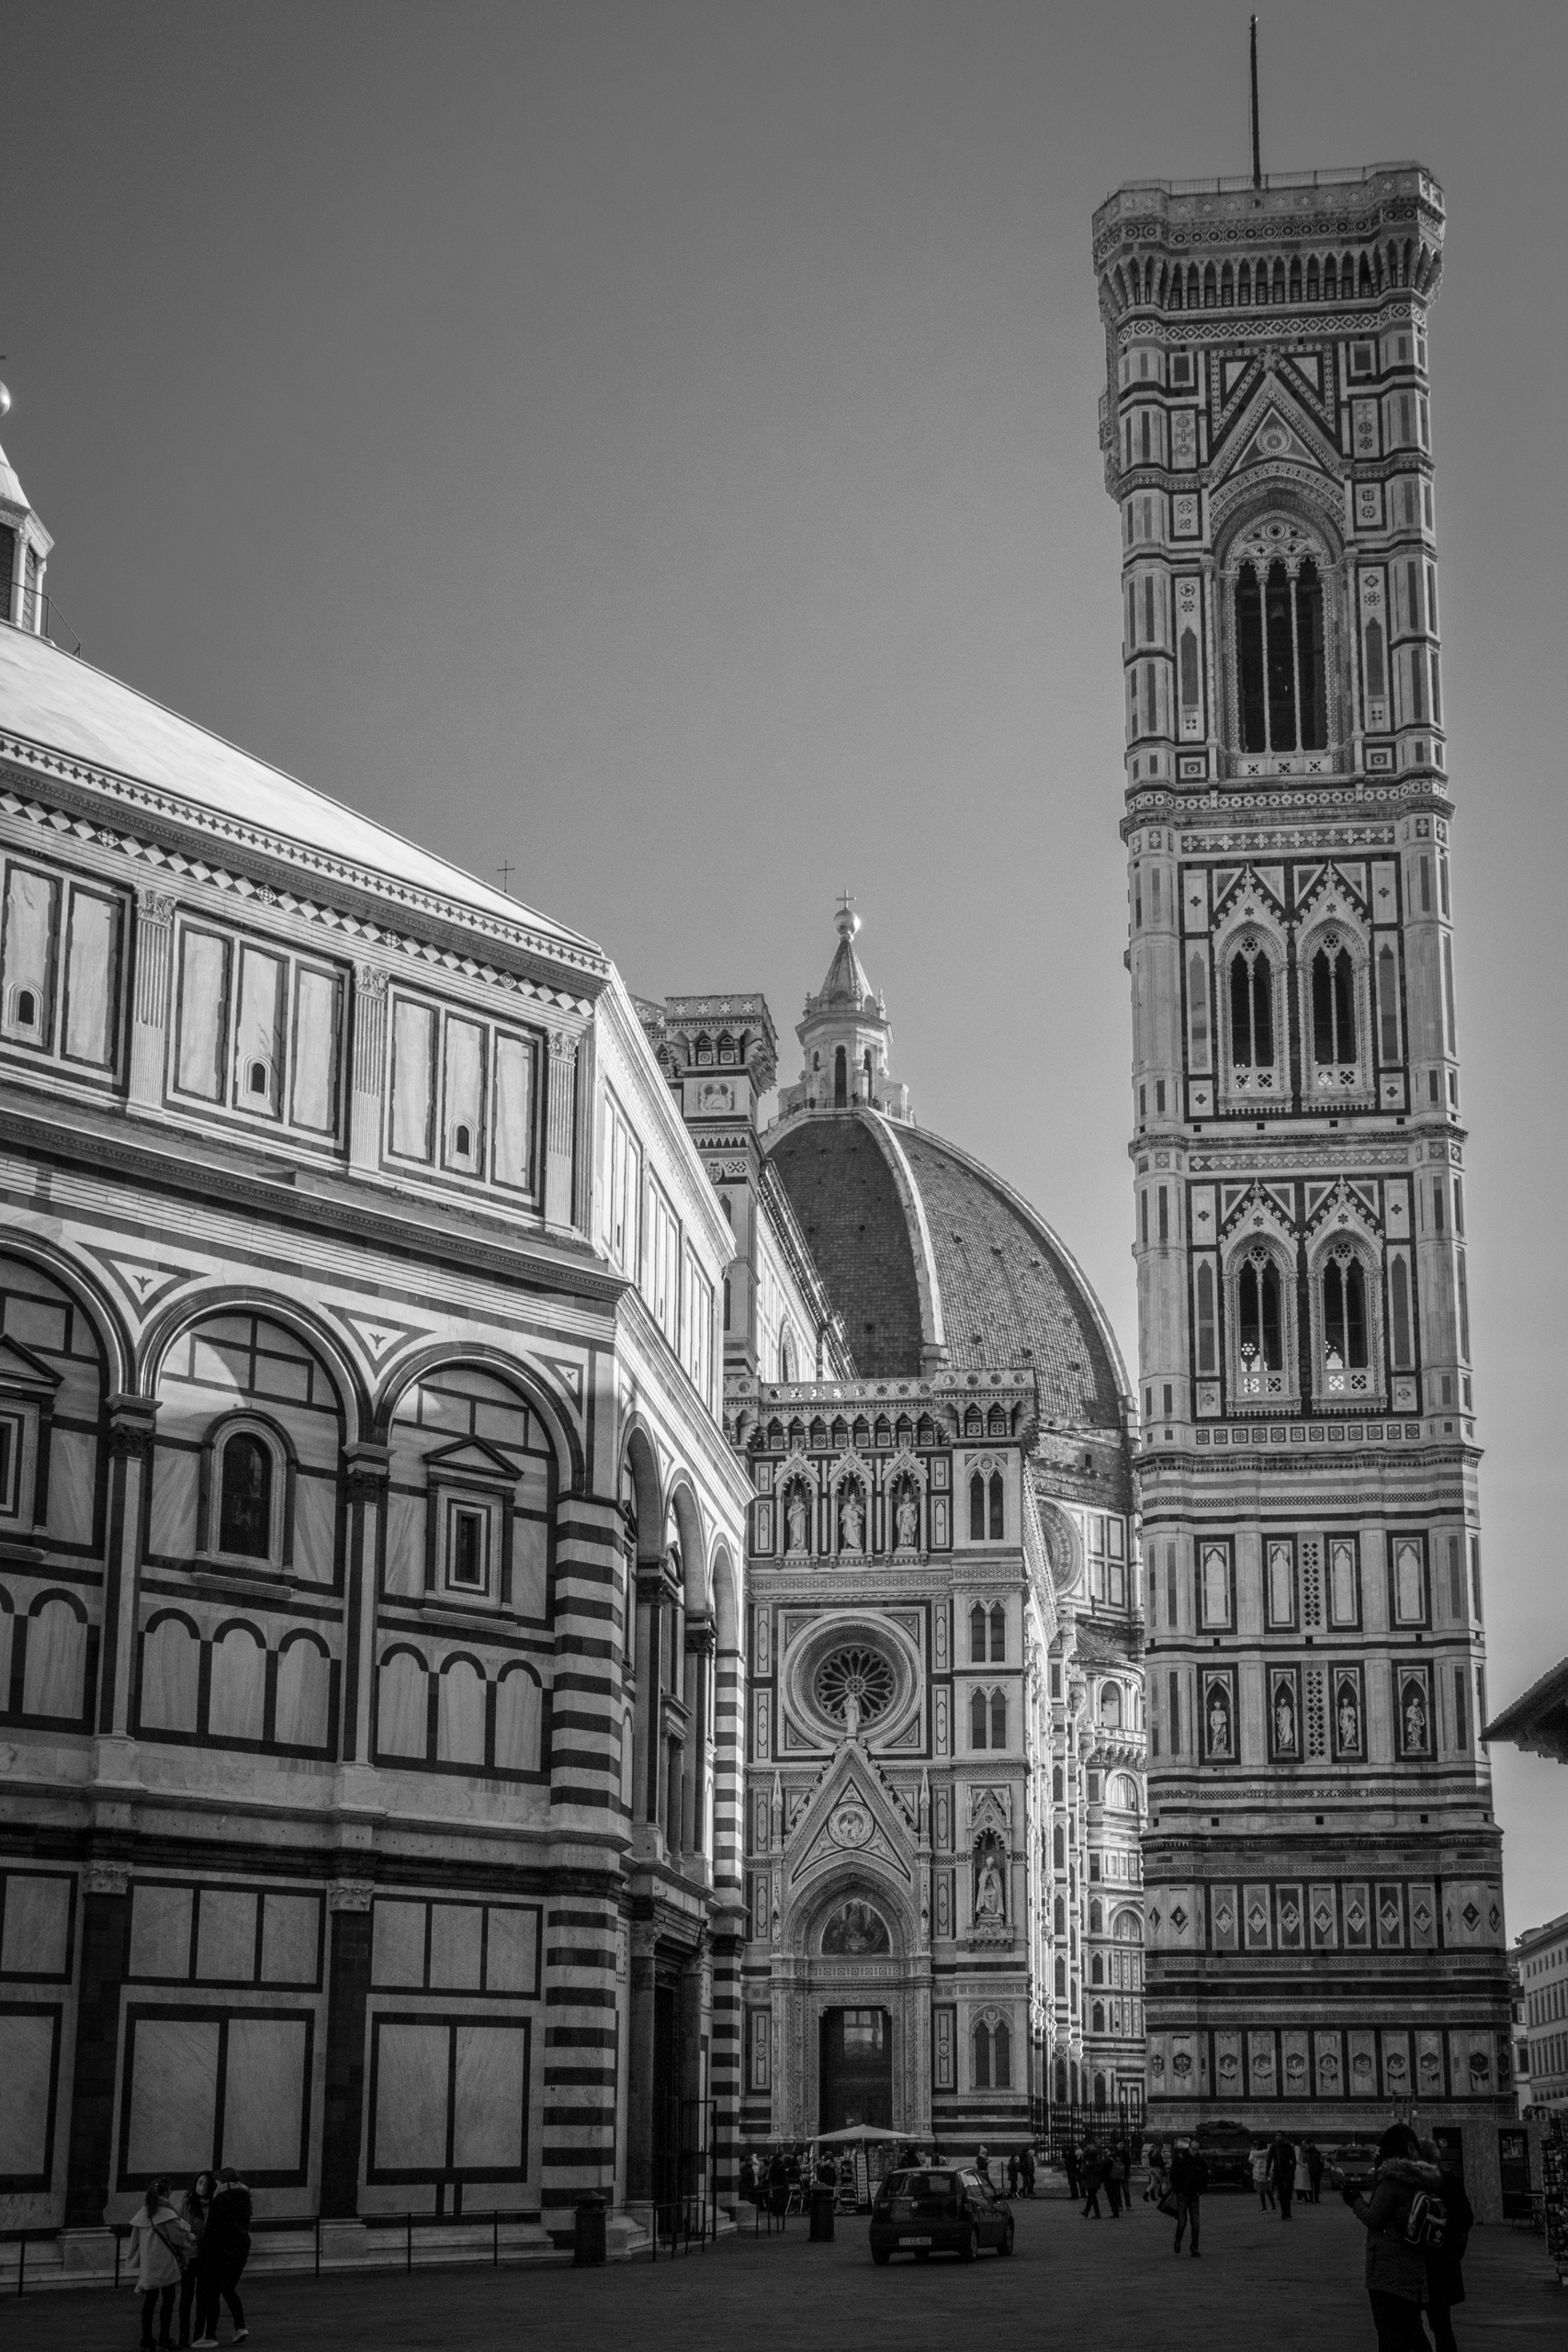 Firenze Duomo